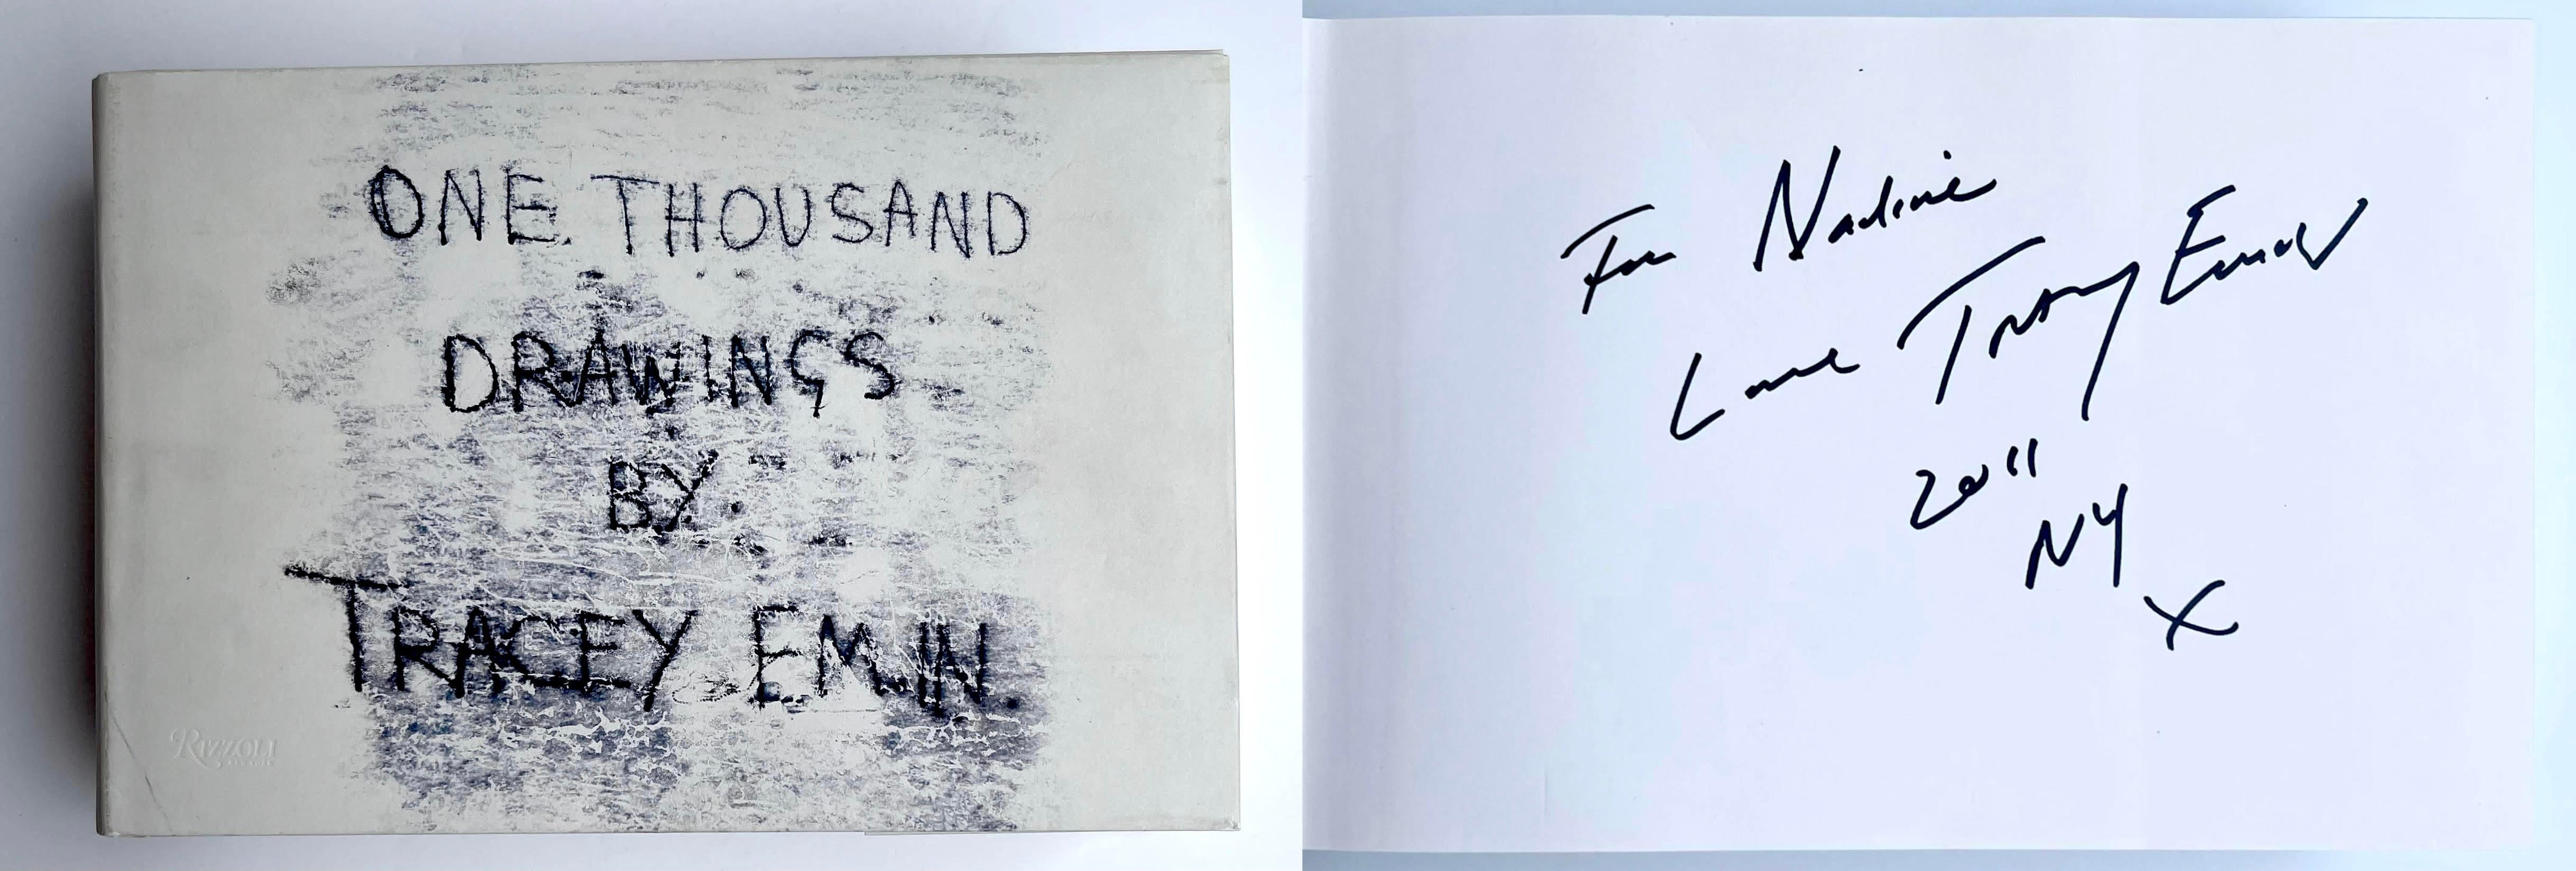 Tracey Emin
One Thousand Drawings By Tracey Emin (handsigniert und beschriftet für Nadine), 2009
Gebundene Monografie mit Schutzumschlag (von Tracey Emin mit Tinte signiert und beschriftet)
Handsigniert, datiert und beschriftet von Tracey Emin für